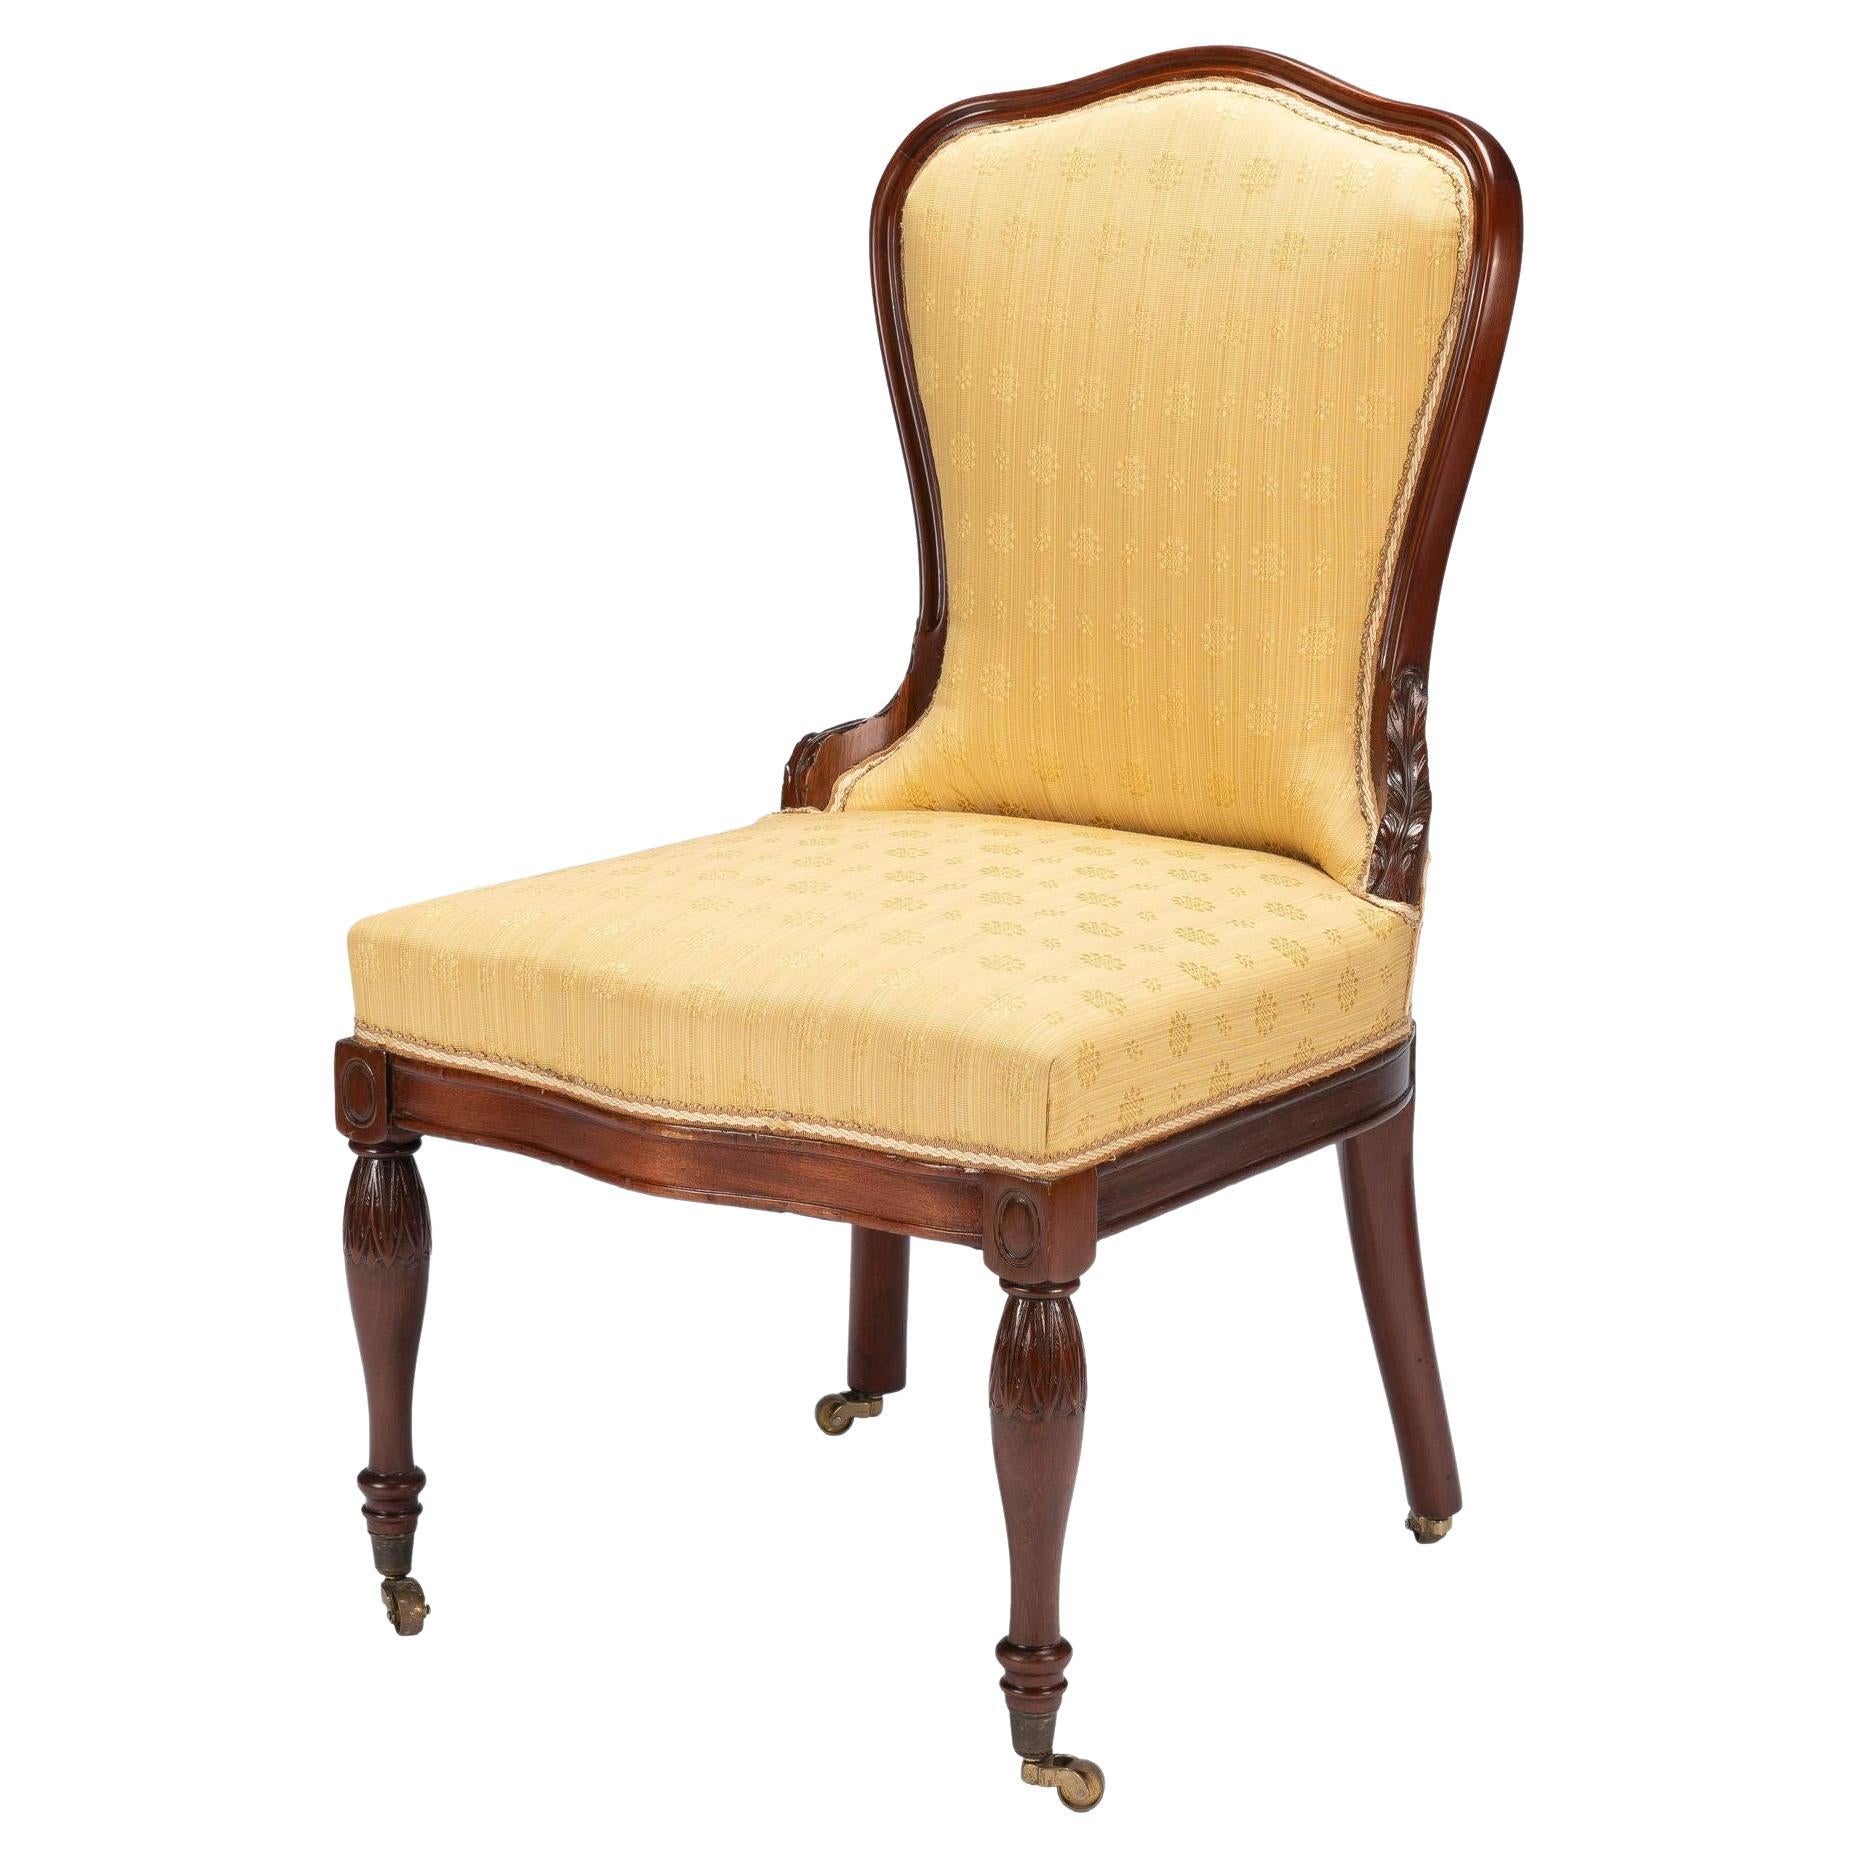 Baltimore Louis XVI Revival Upholstered Slipper Chair, '1850-75' For Sale